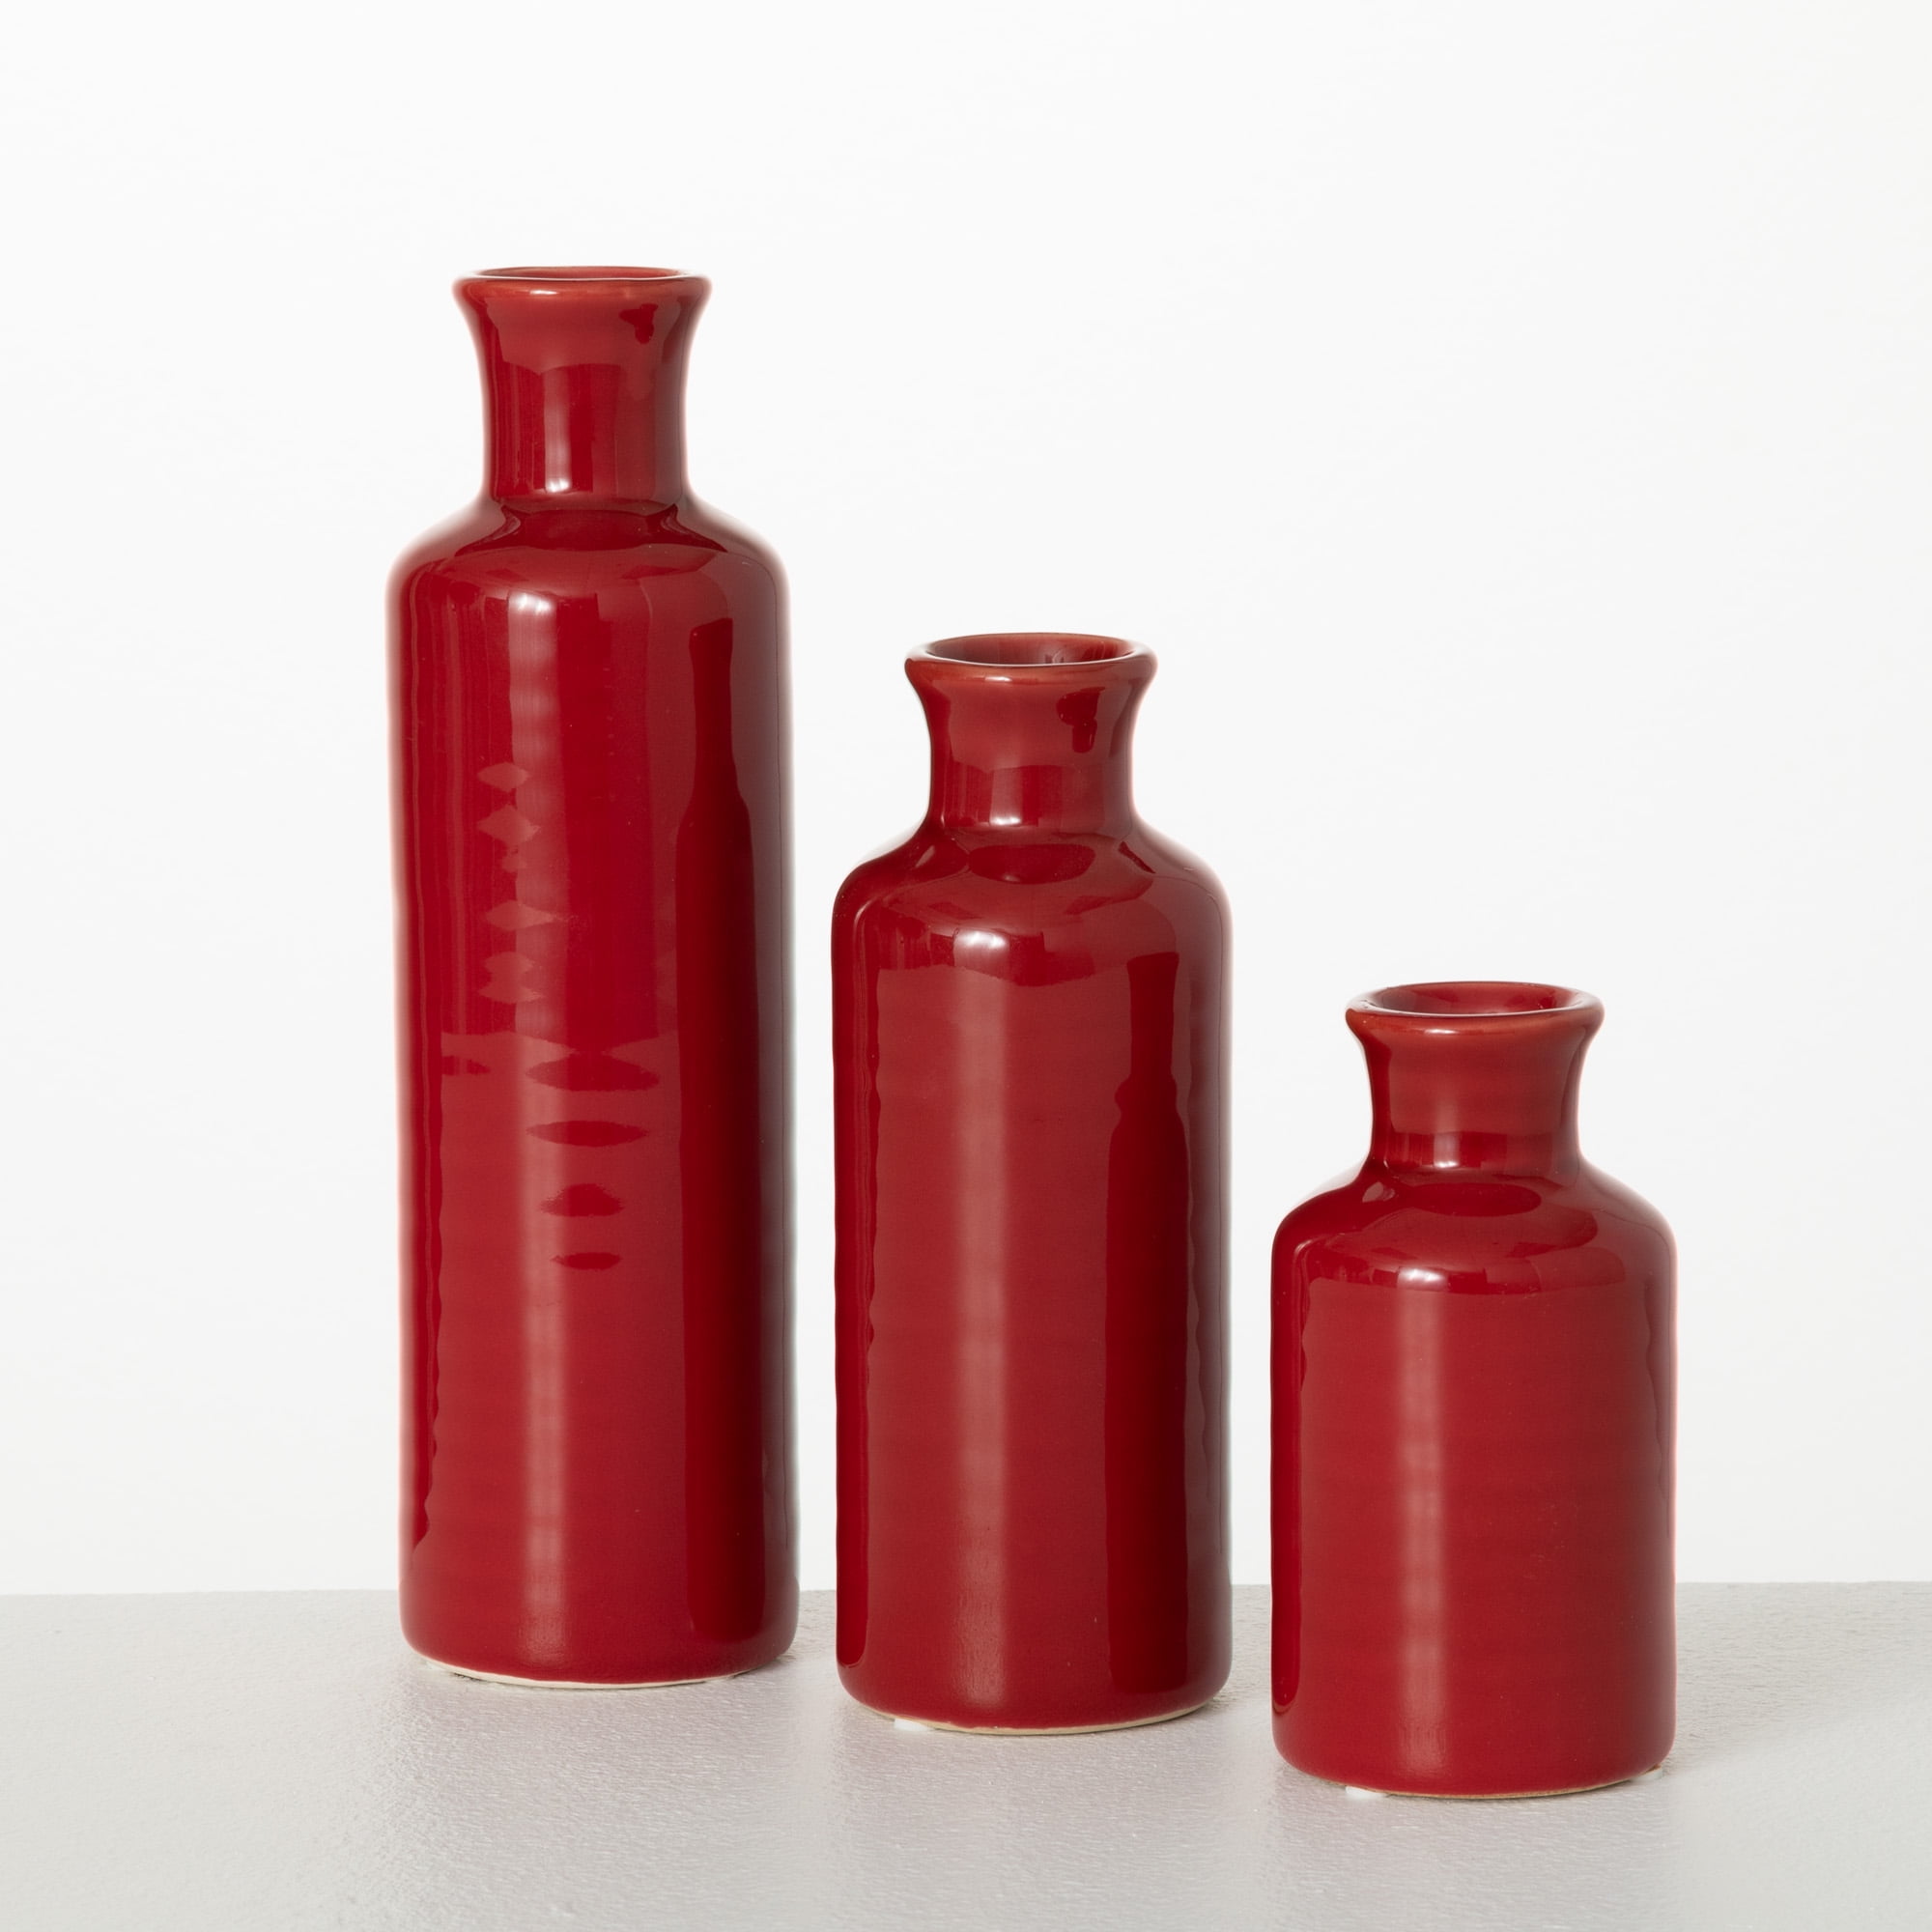 Sullivans Set of 3 Small Ceramic Bottle Vases 5"H, 7.5"H & 10"H Red -